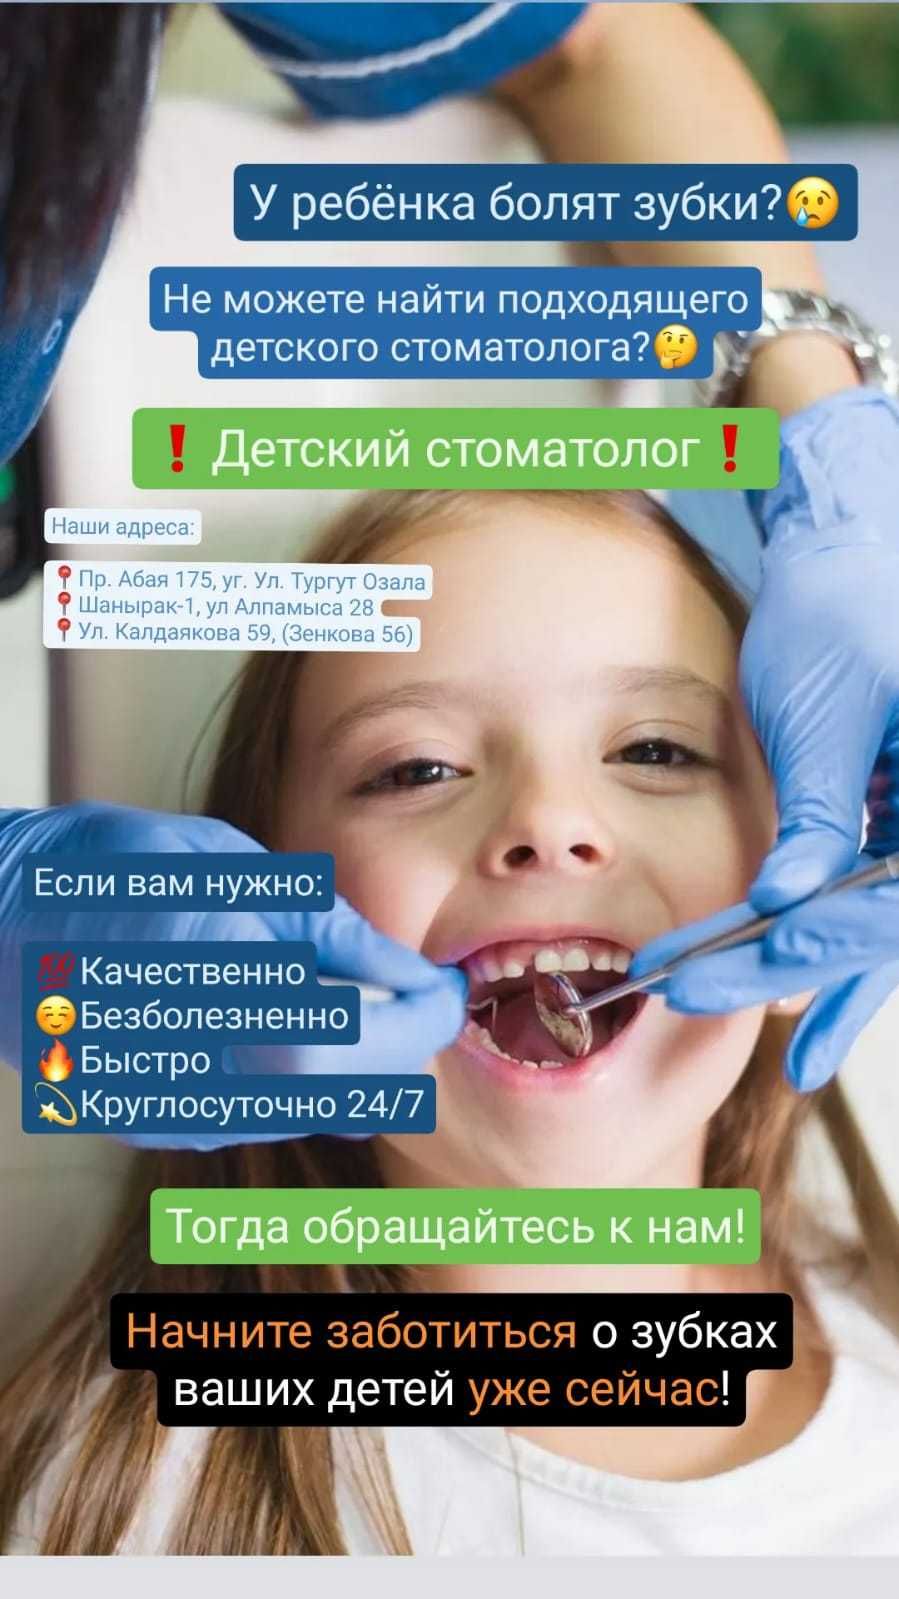 Реставрация передних зубов круглосуточно в Алматы